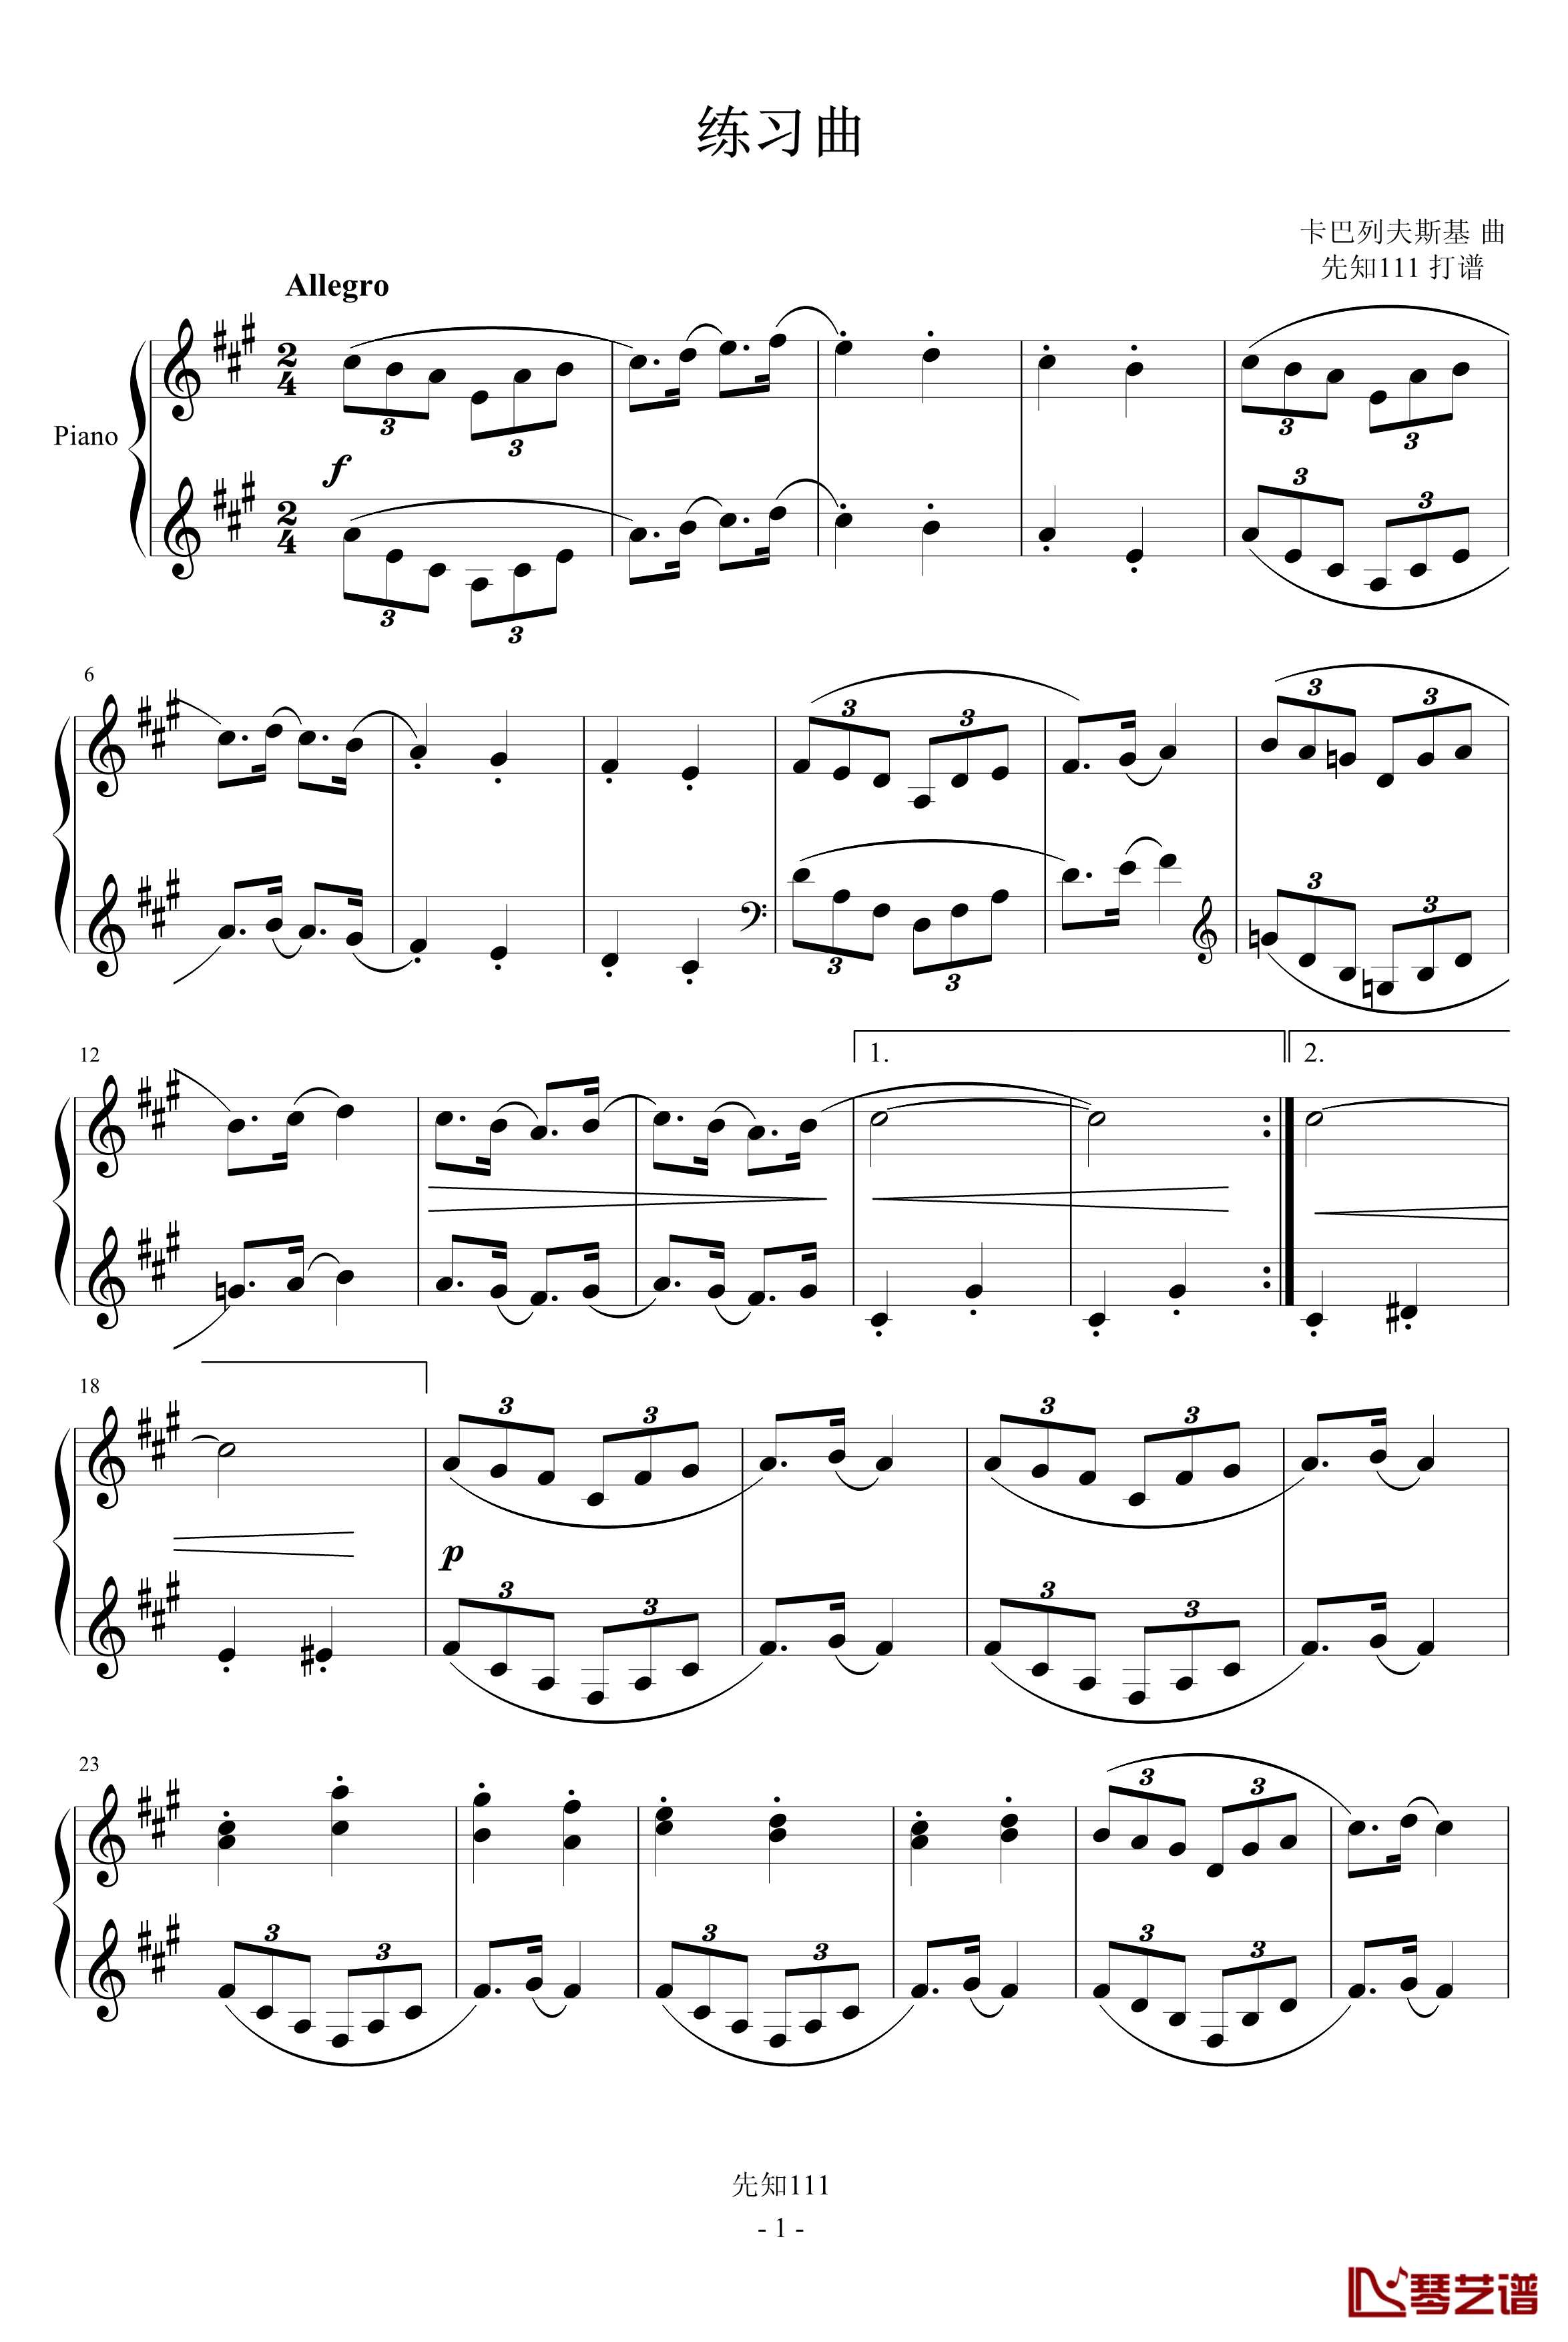 卡巴列夫斯基-练习曲钢琴谱-卡巴列伕斯基1